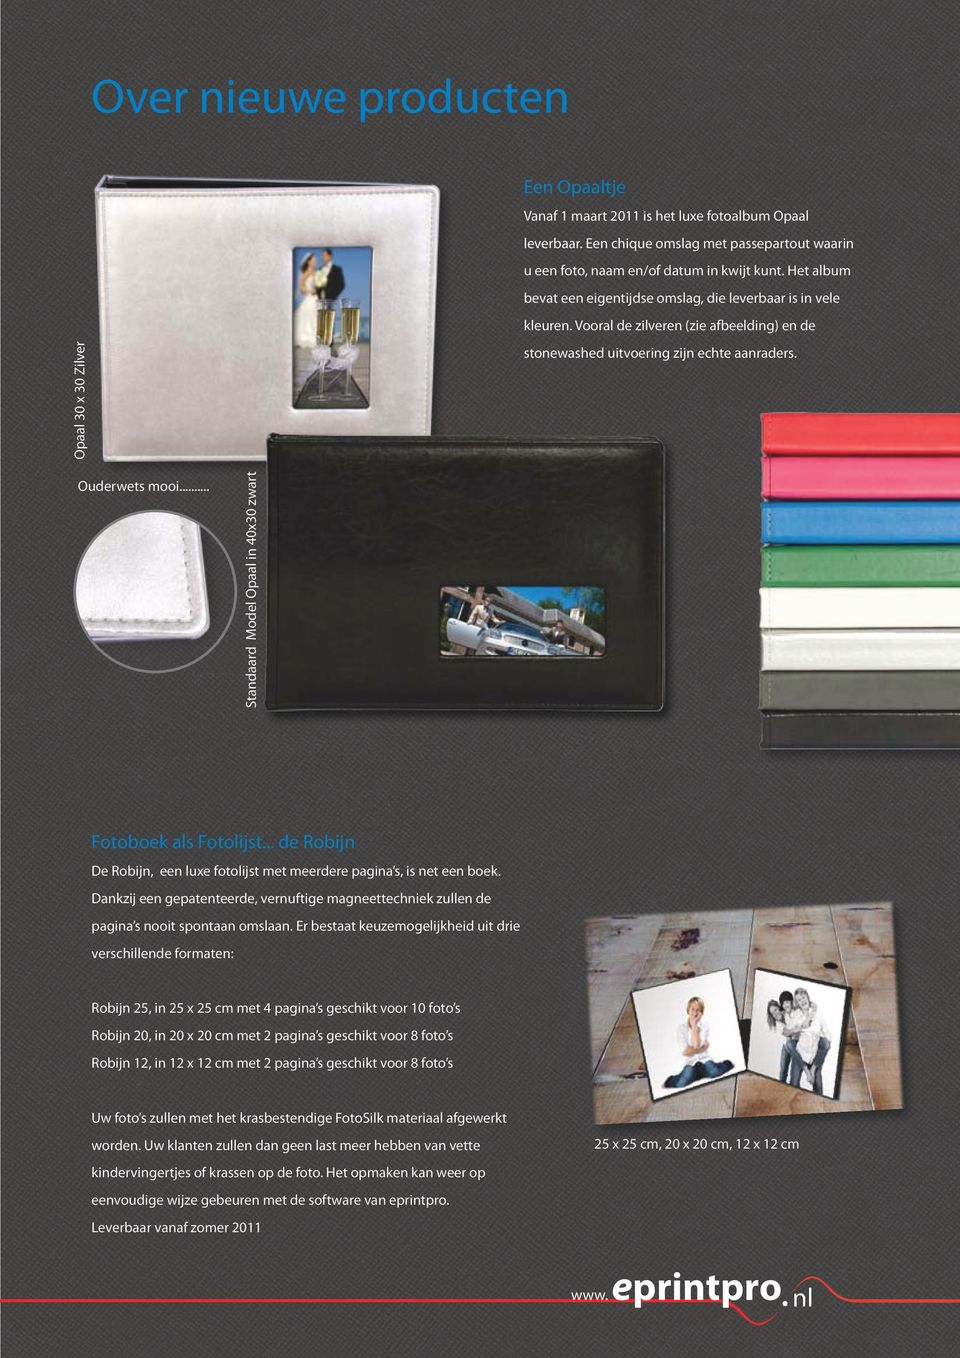 .. Standaard Model Opaal in 40x30 zwart Fotoboek als Fotolijst... de Robijn De Robijn, een luxe fotolijst met meerdere pagina s, is net een boek.